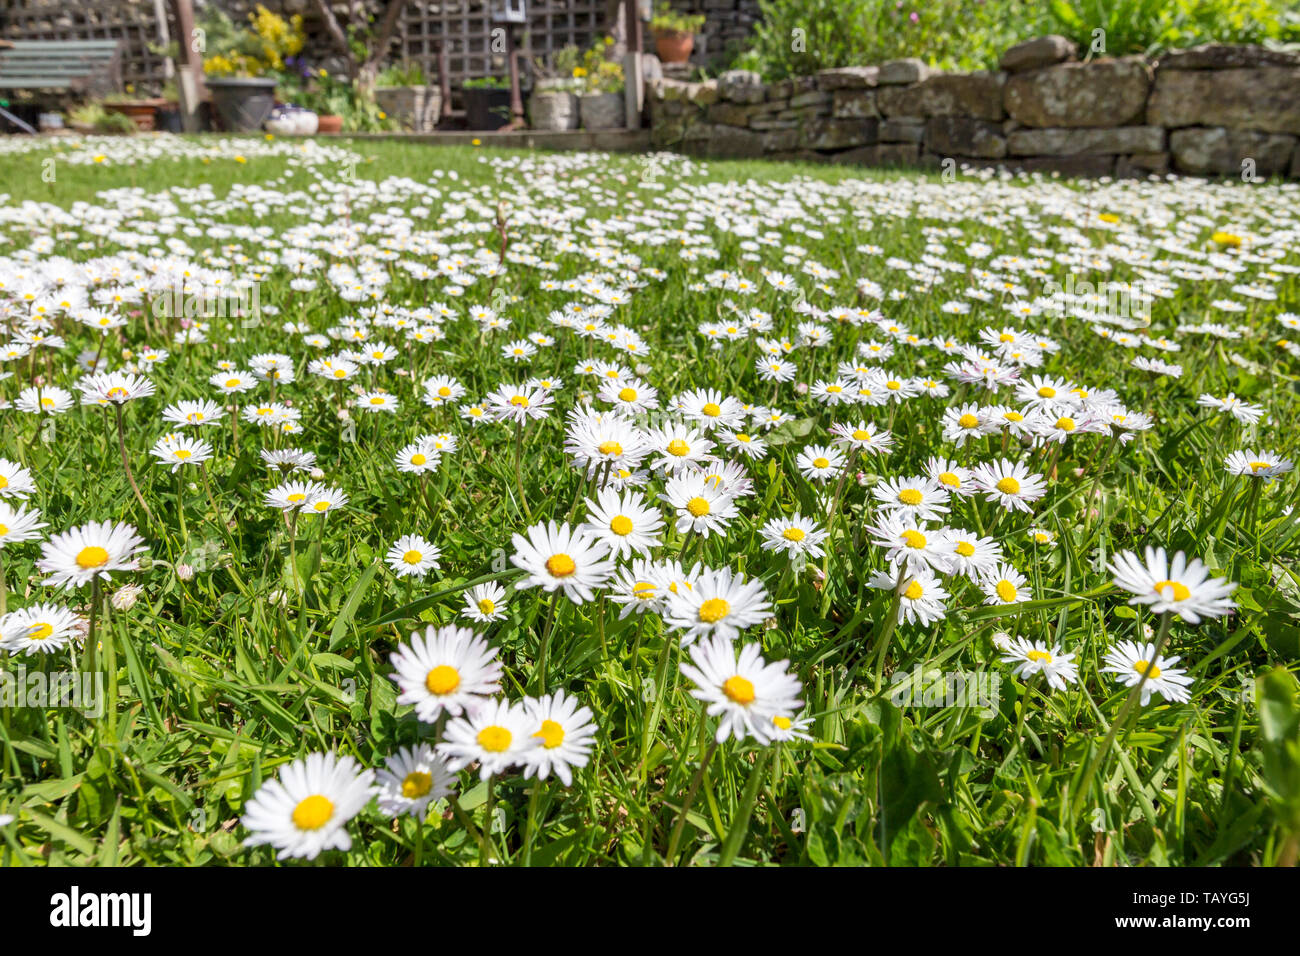 Un jardin pelouse gazon couvert de pâquerettes (Bellis perennis) Banque D'Images